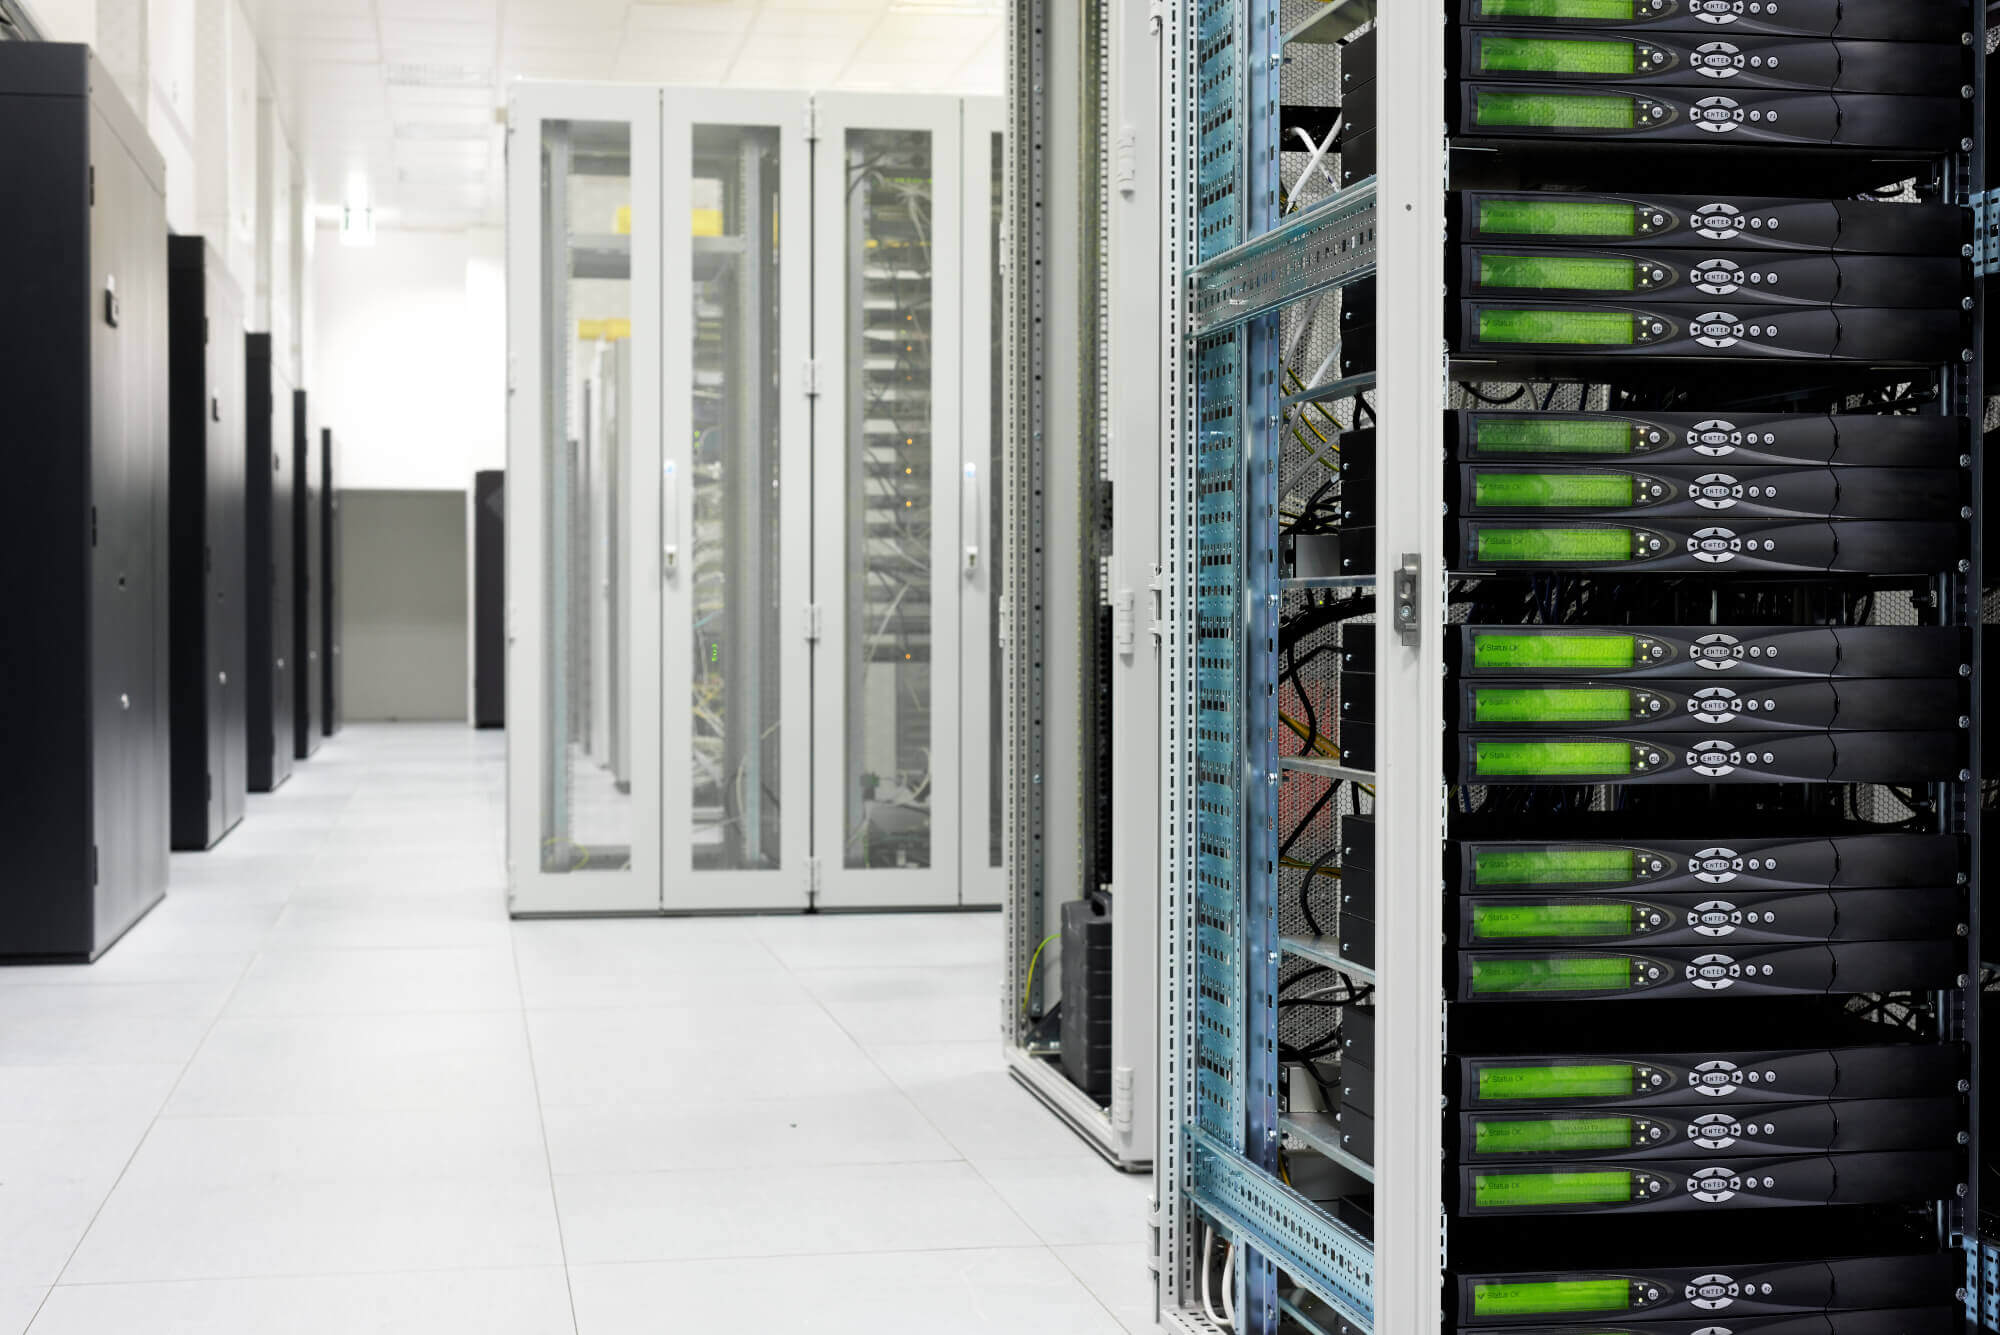 Server room with racks of data backup equipment